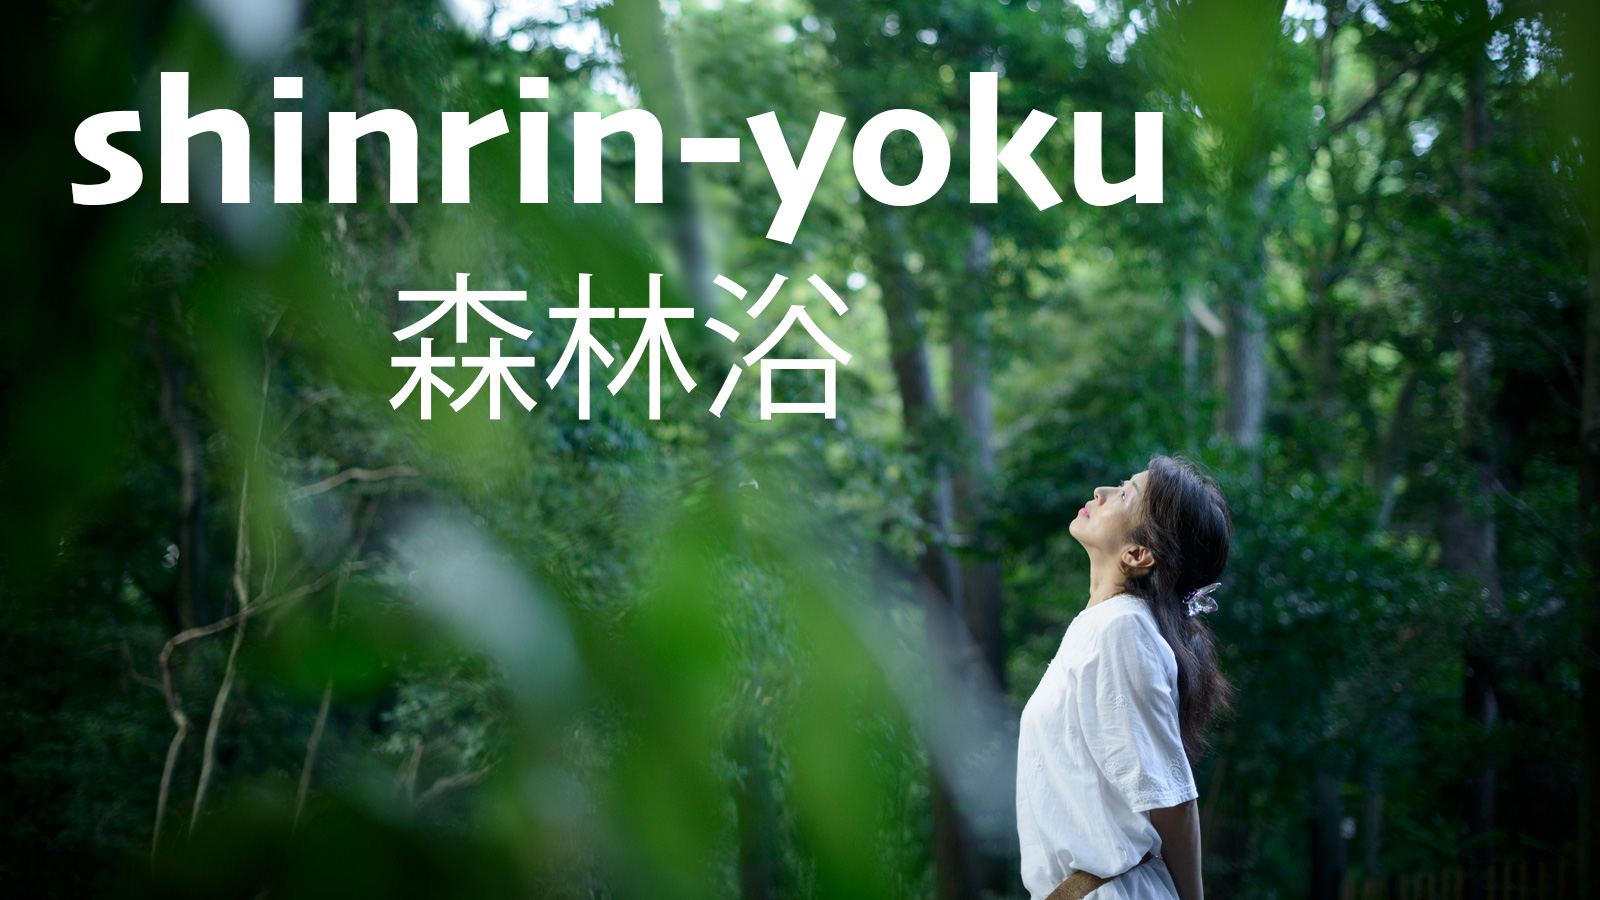 translation of japanese word shinrinyoku is forest bathing